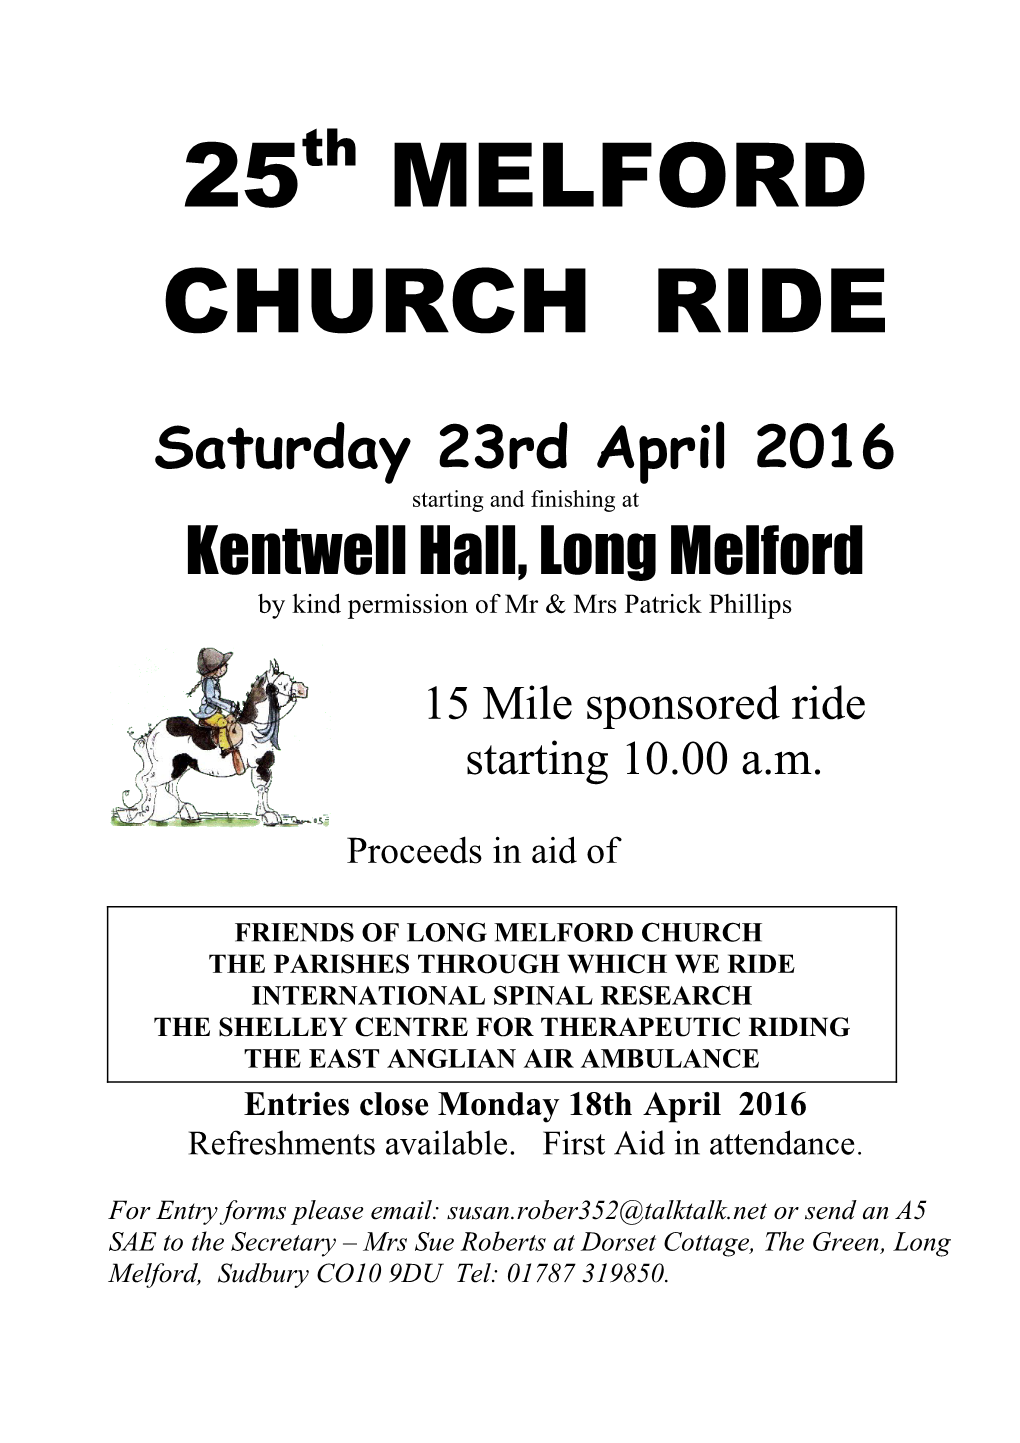 Melford Church Ride